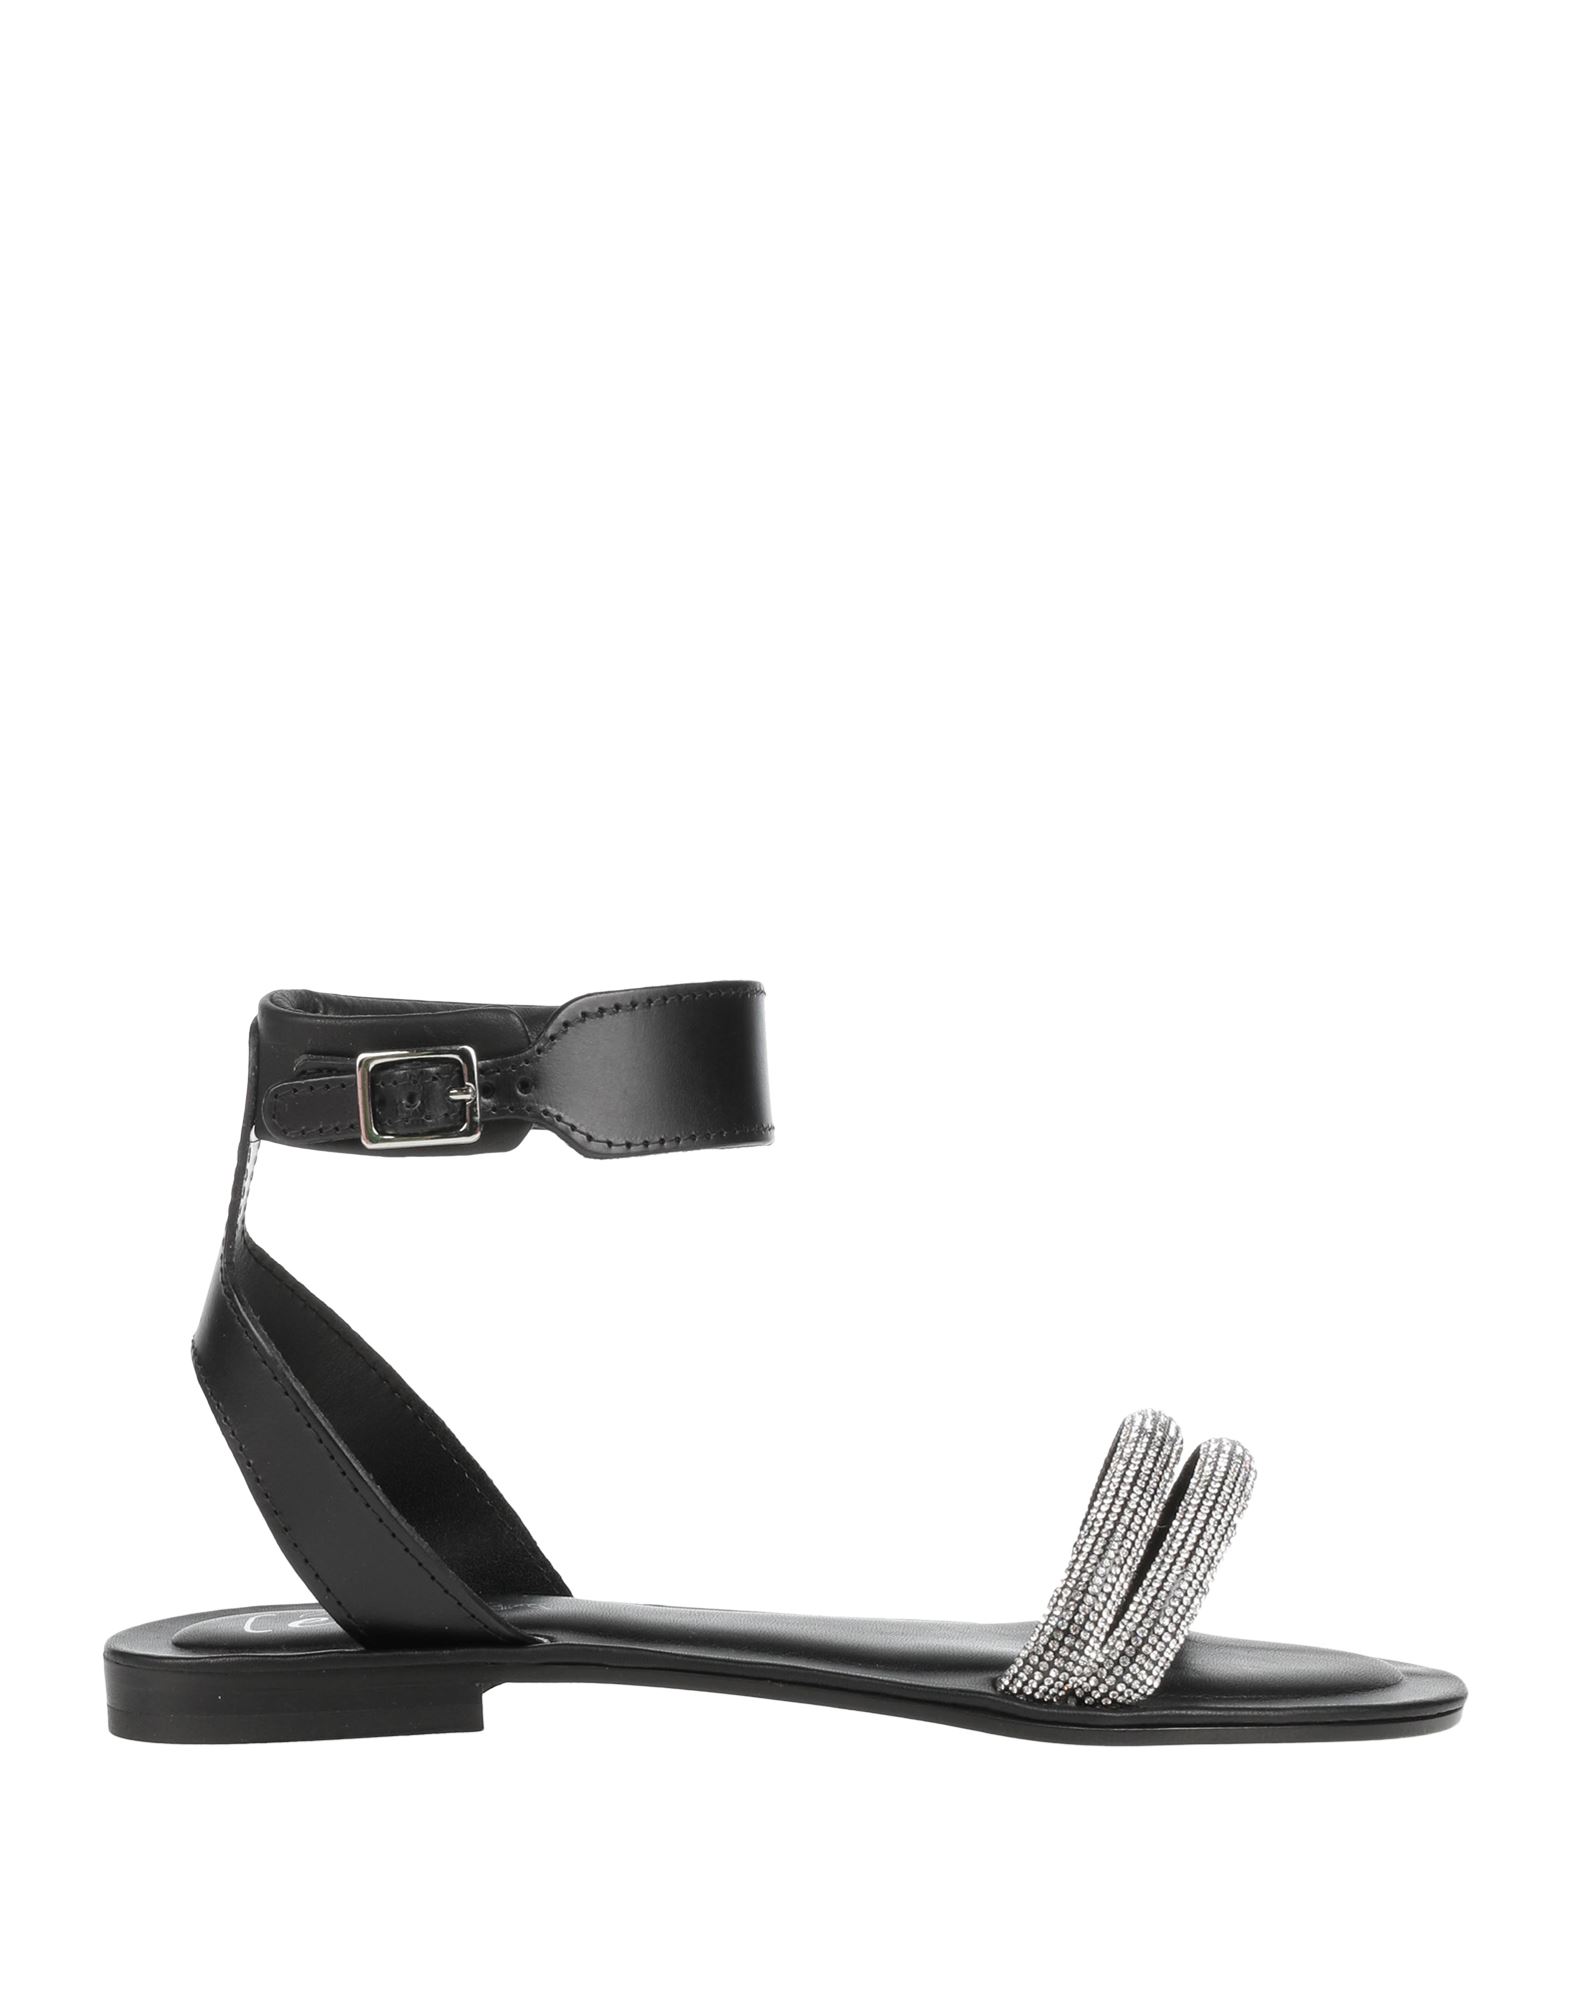 Cécile Woman Sandals Black Size 7 Leather